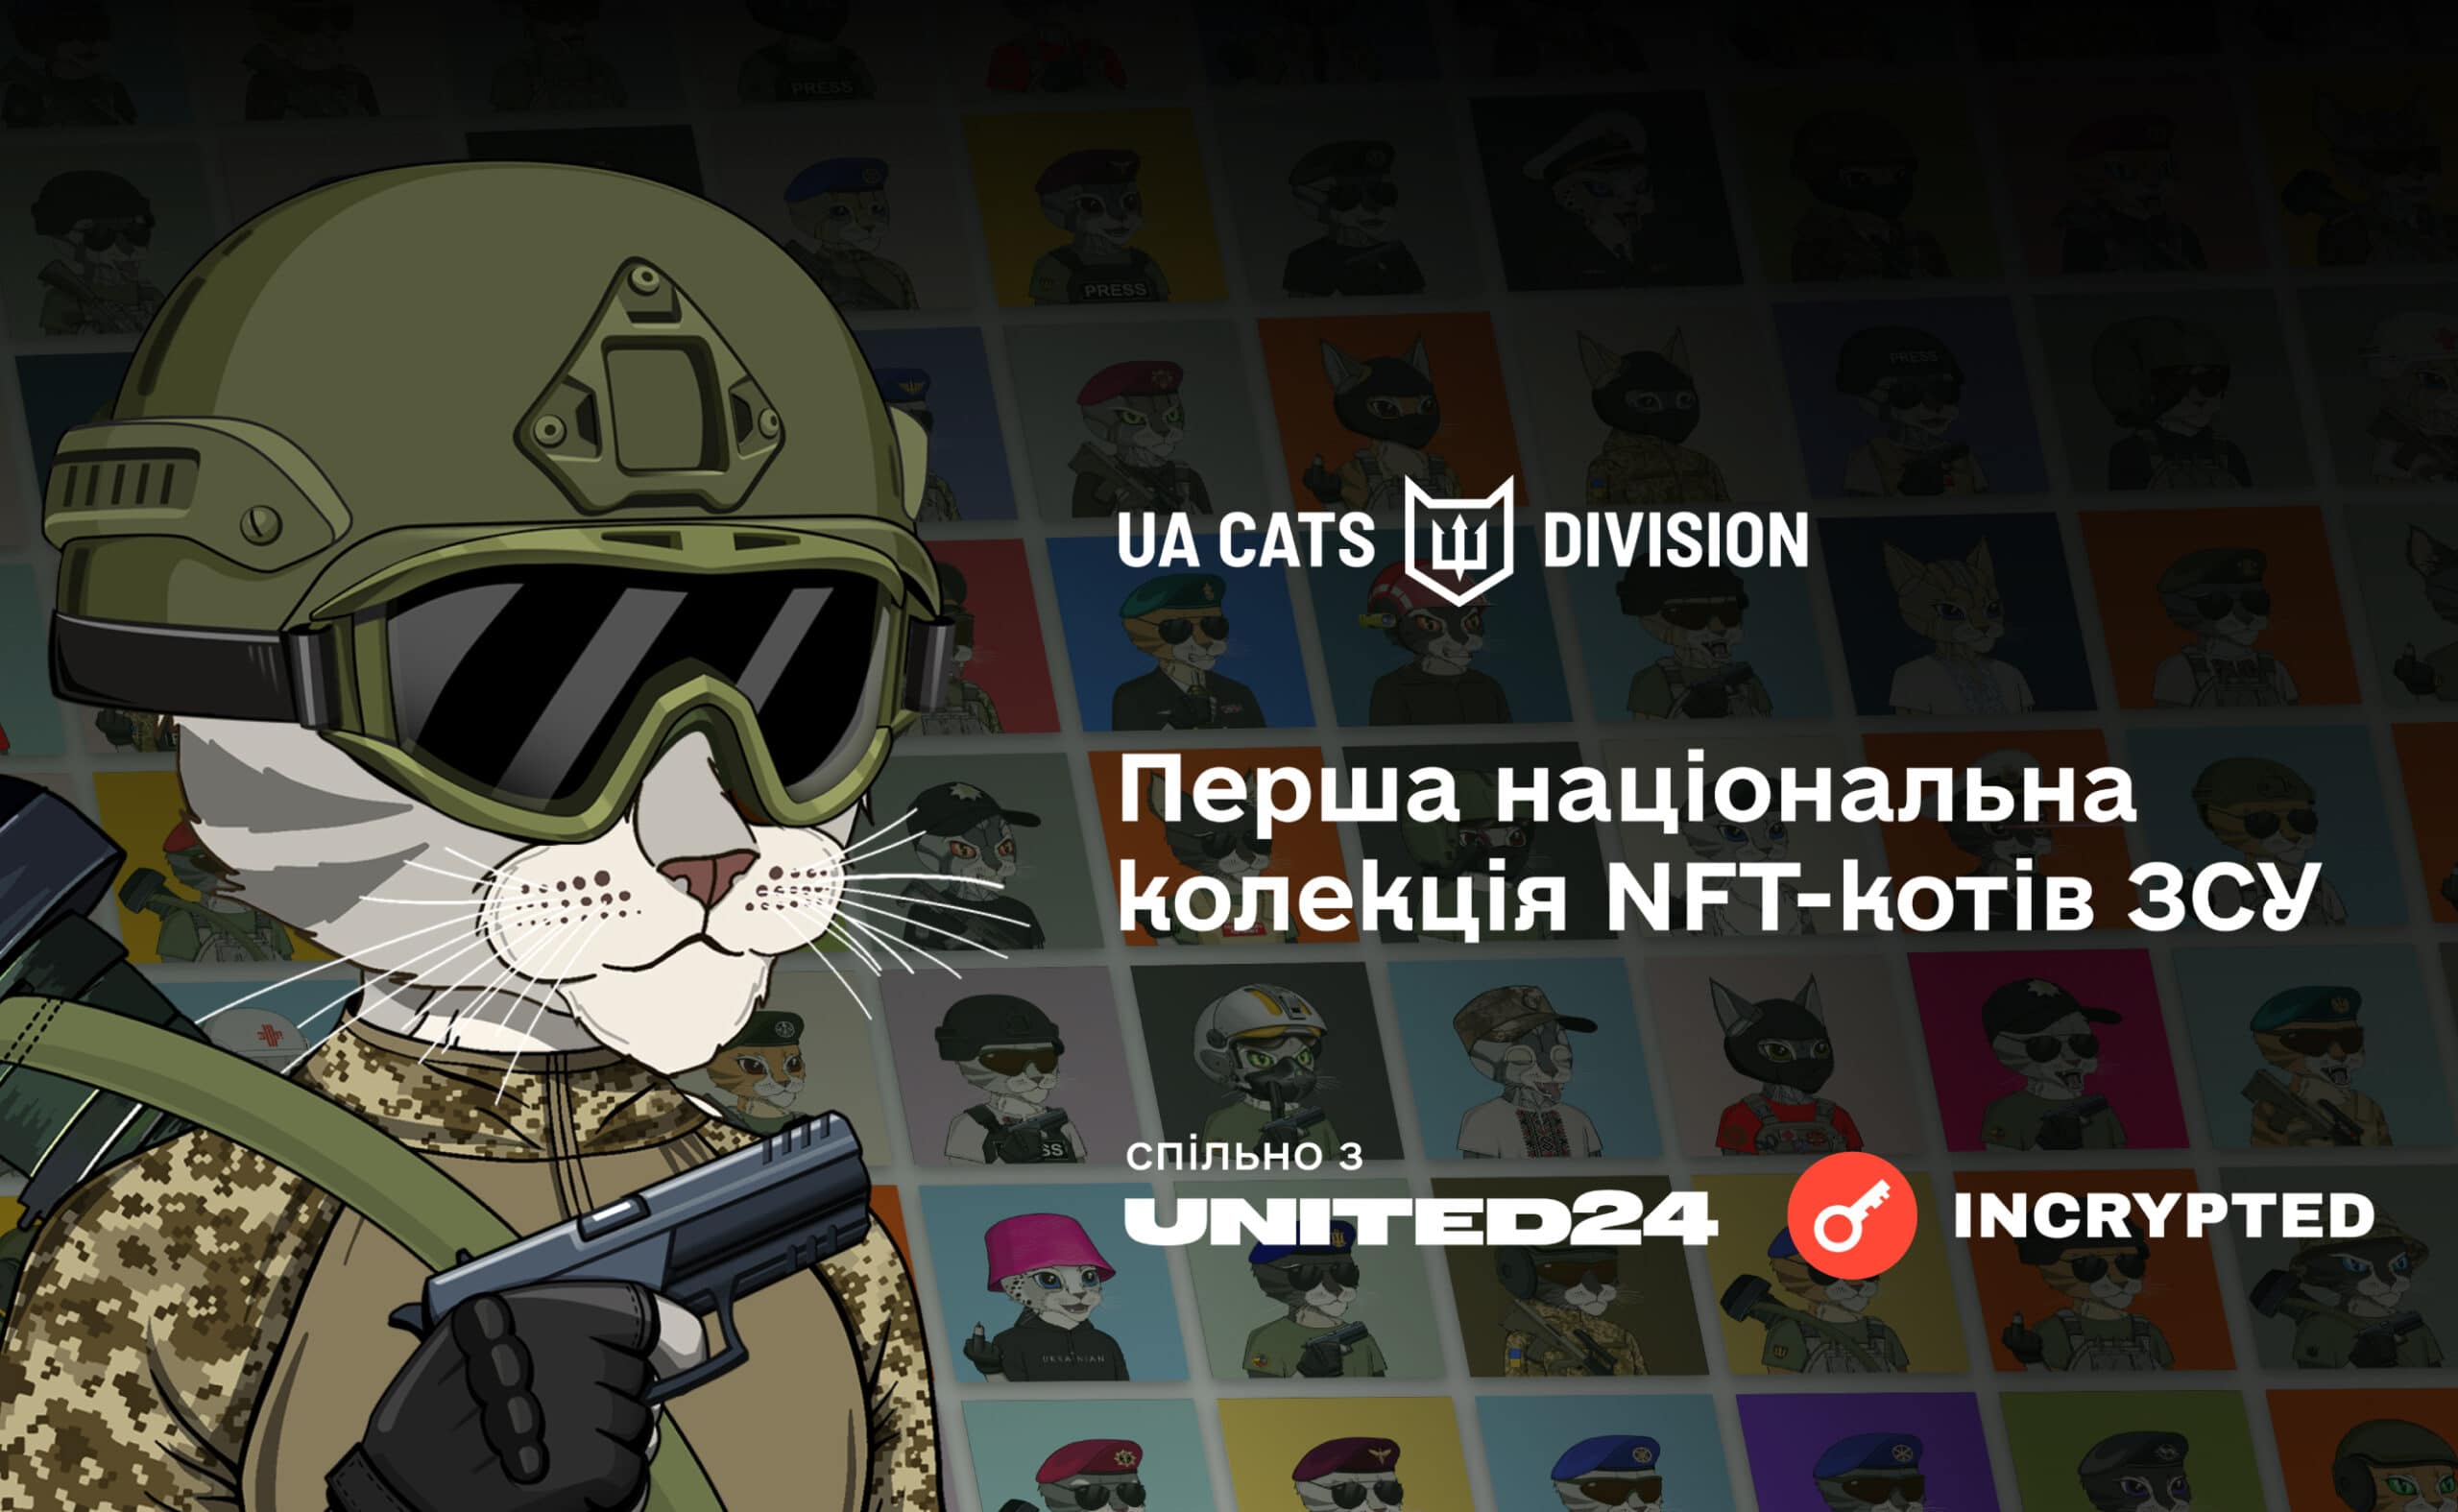 UaCatsDivision NFT запустили минт «котиков ЗСУ». Заглавный коллаж новости.